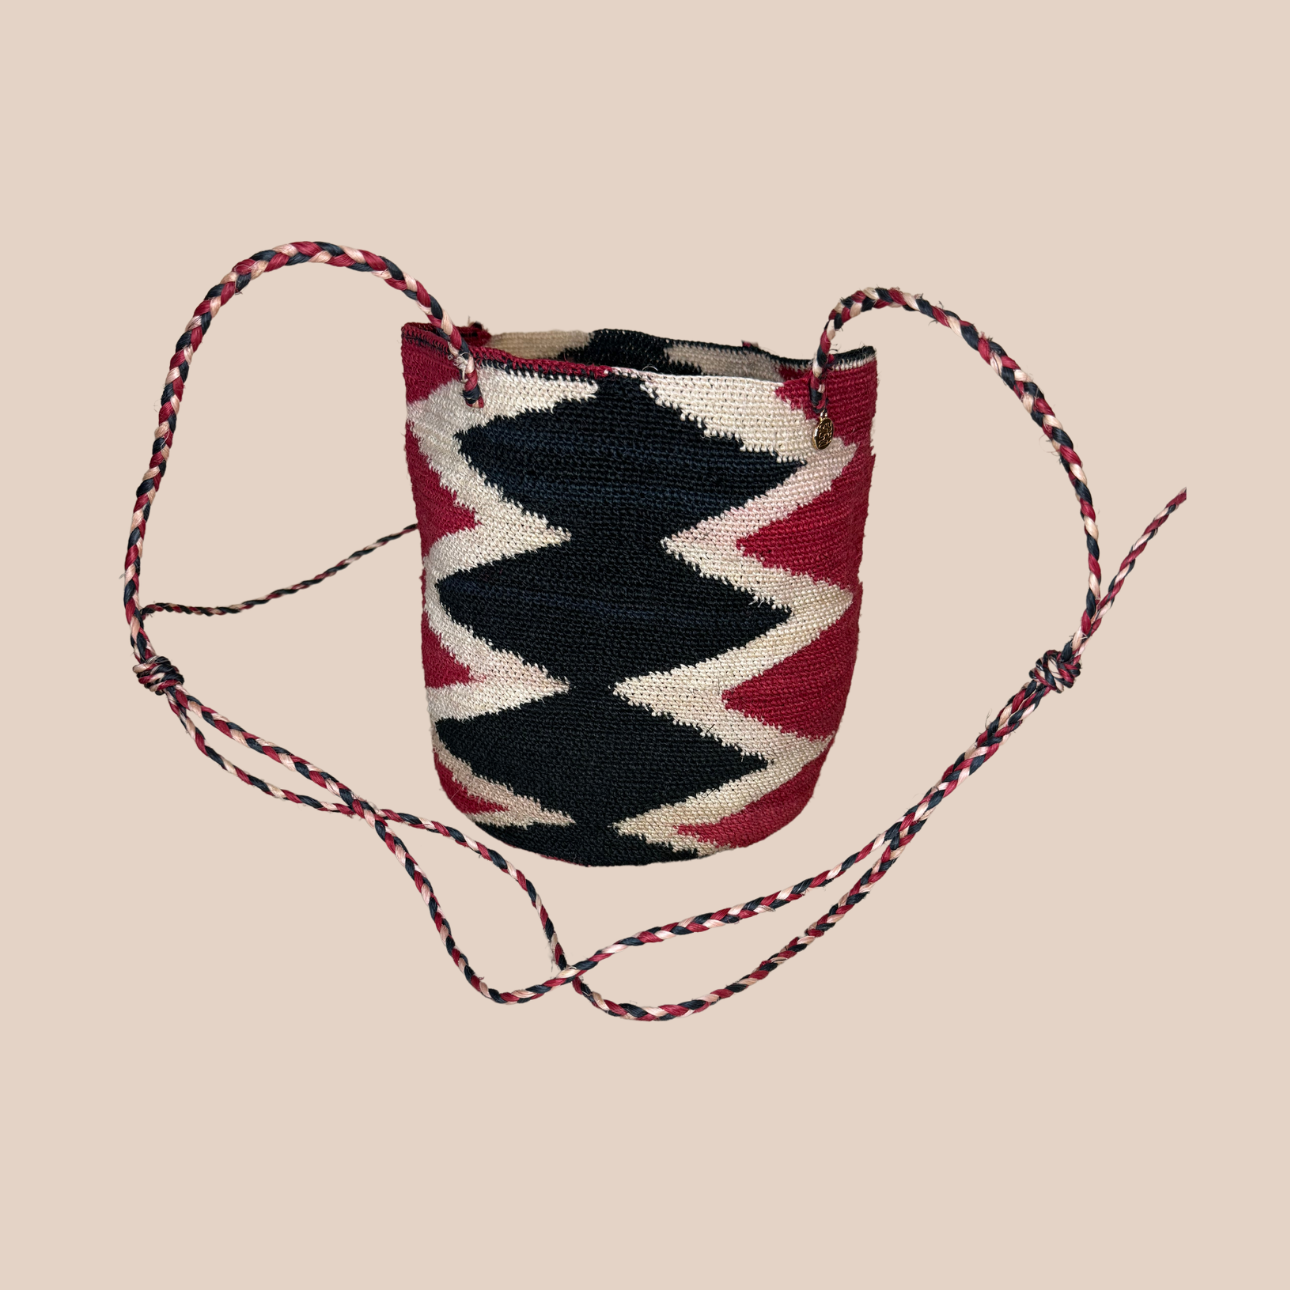  Image du sac GUAPITA de Maison Badigo, sac en fibres de cactus multicolore unique et tendance